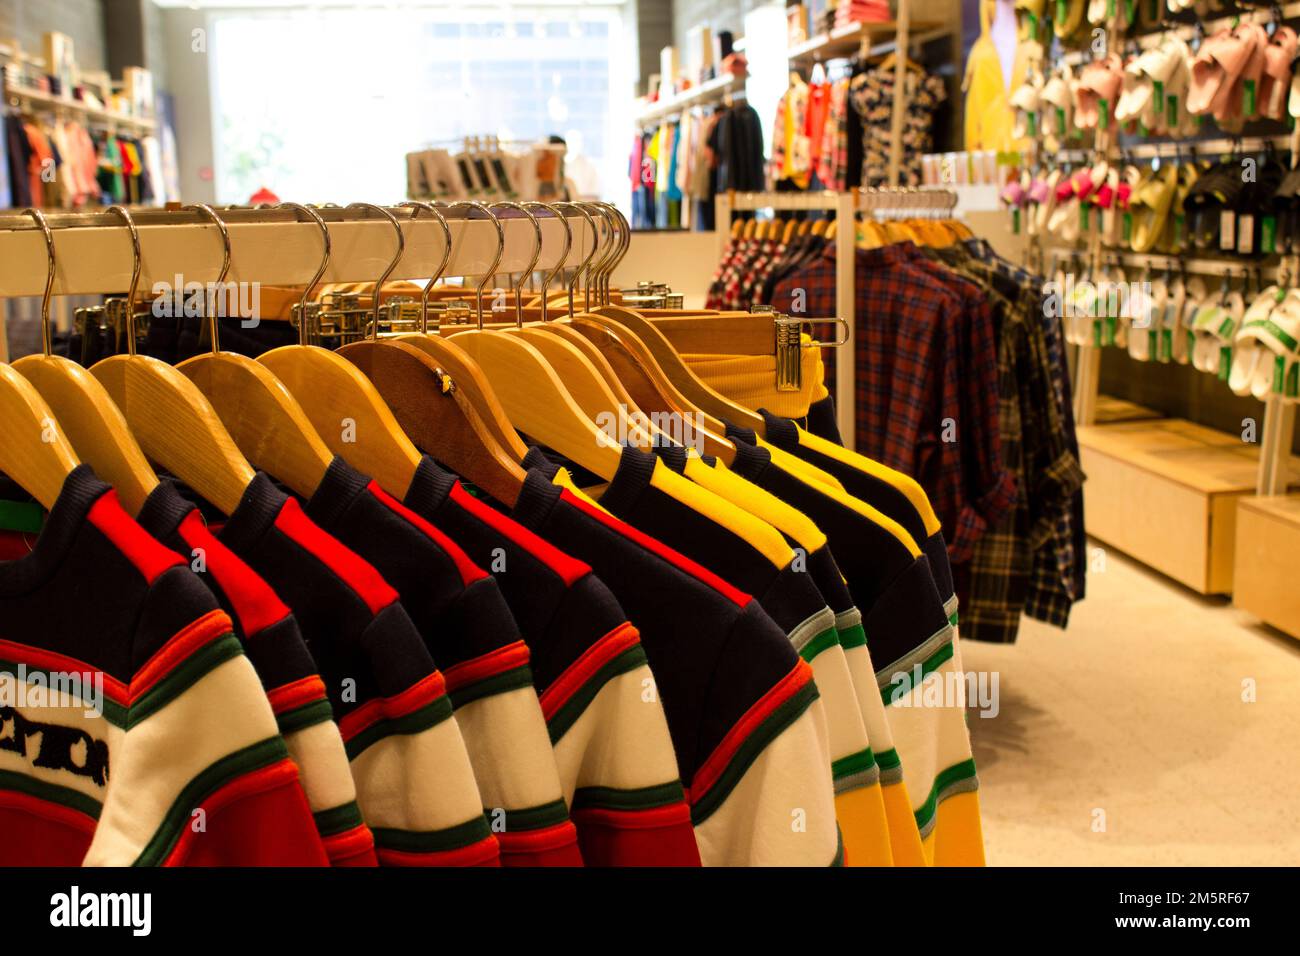 Hemden und Hosen, die an Kleiderbügeln hängen und auf einem Regal in einem modernen Bekleidungsgeschäft angeordnet sind Stockfoto